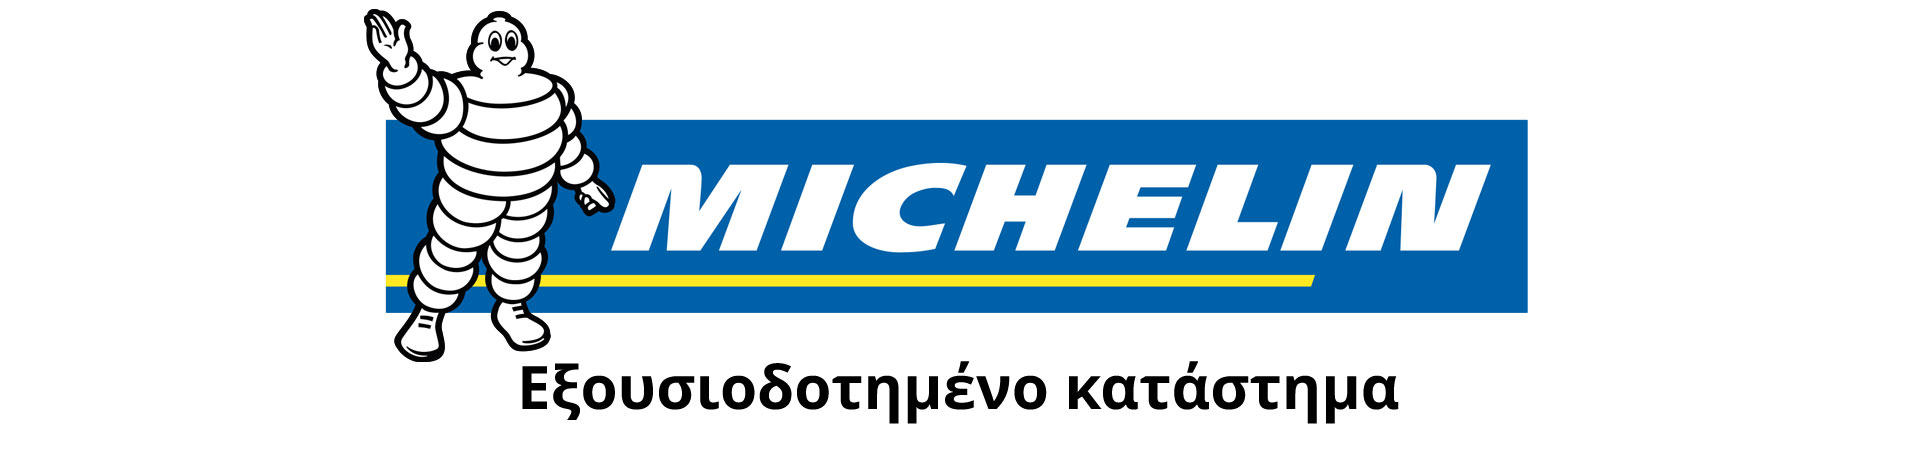 Εξουσιοδοτημένο κατάστημα - Επίσημος συνεργάτης Michelin - Ελαστικά Μαζιώτης